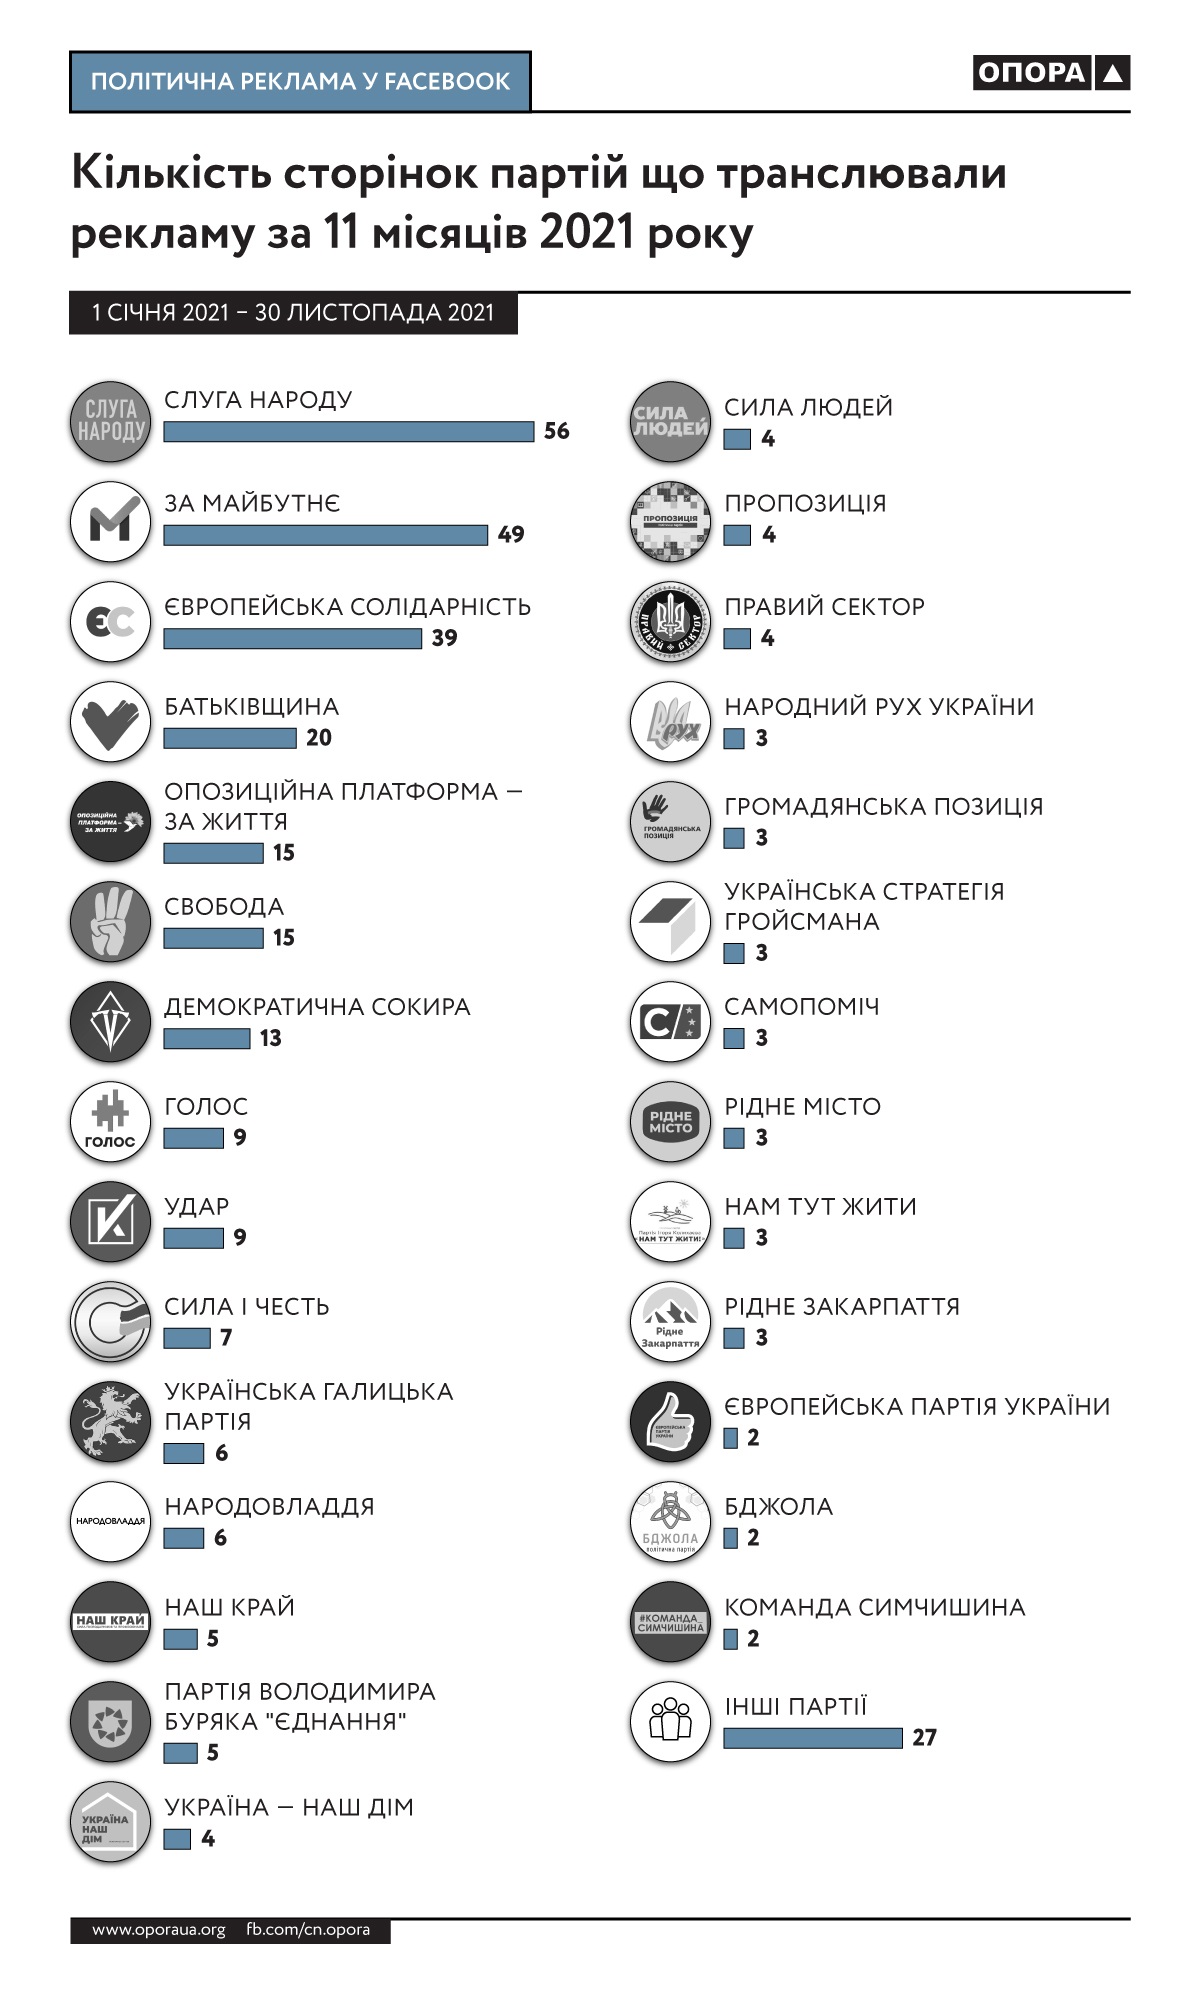 Мільйони на лайки. Скільки топпартії витрачають на рекламу в українському Facebook та Instagram